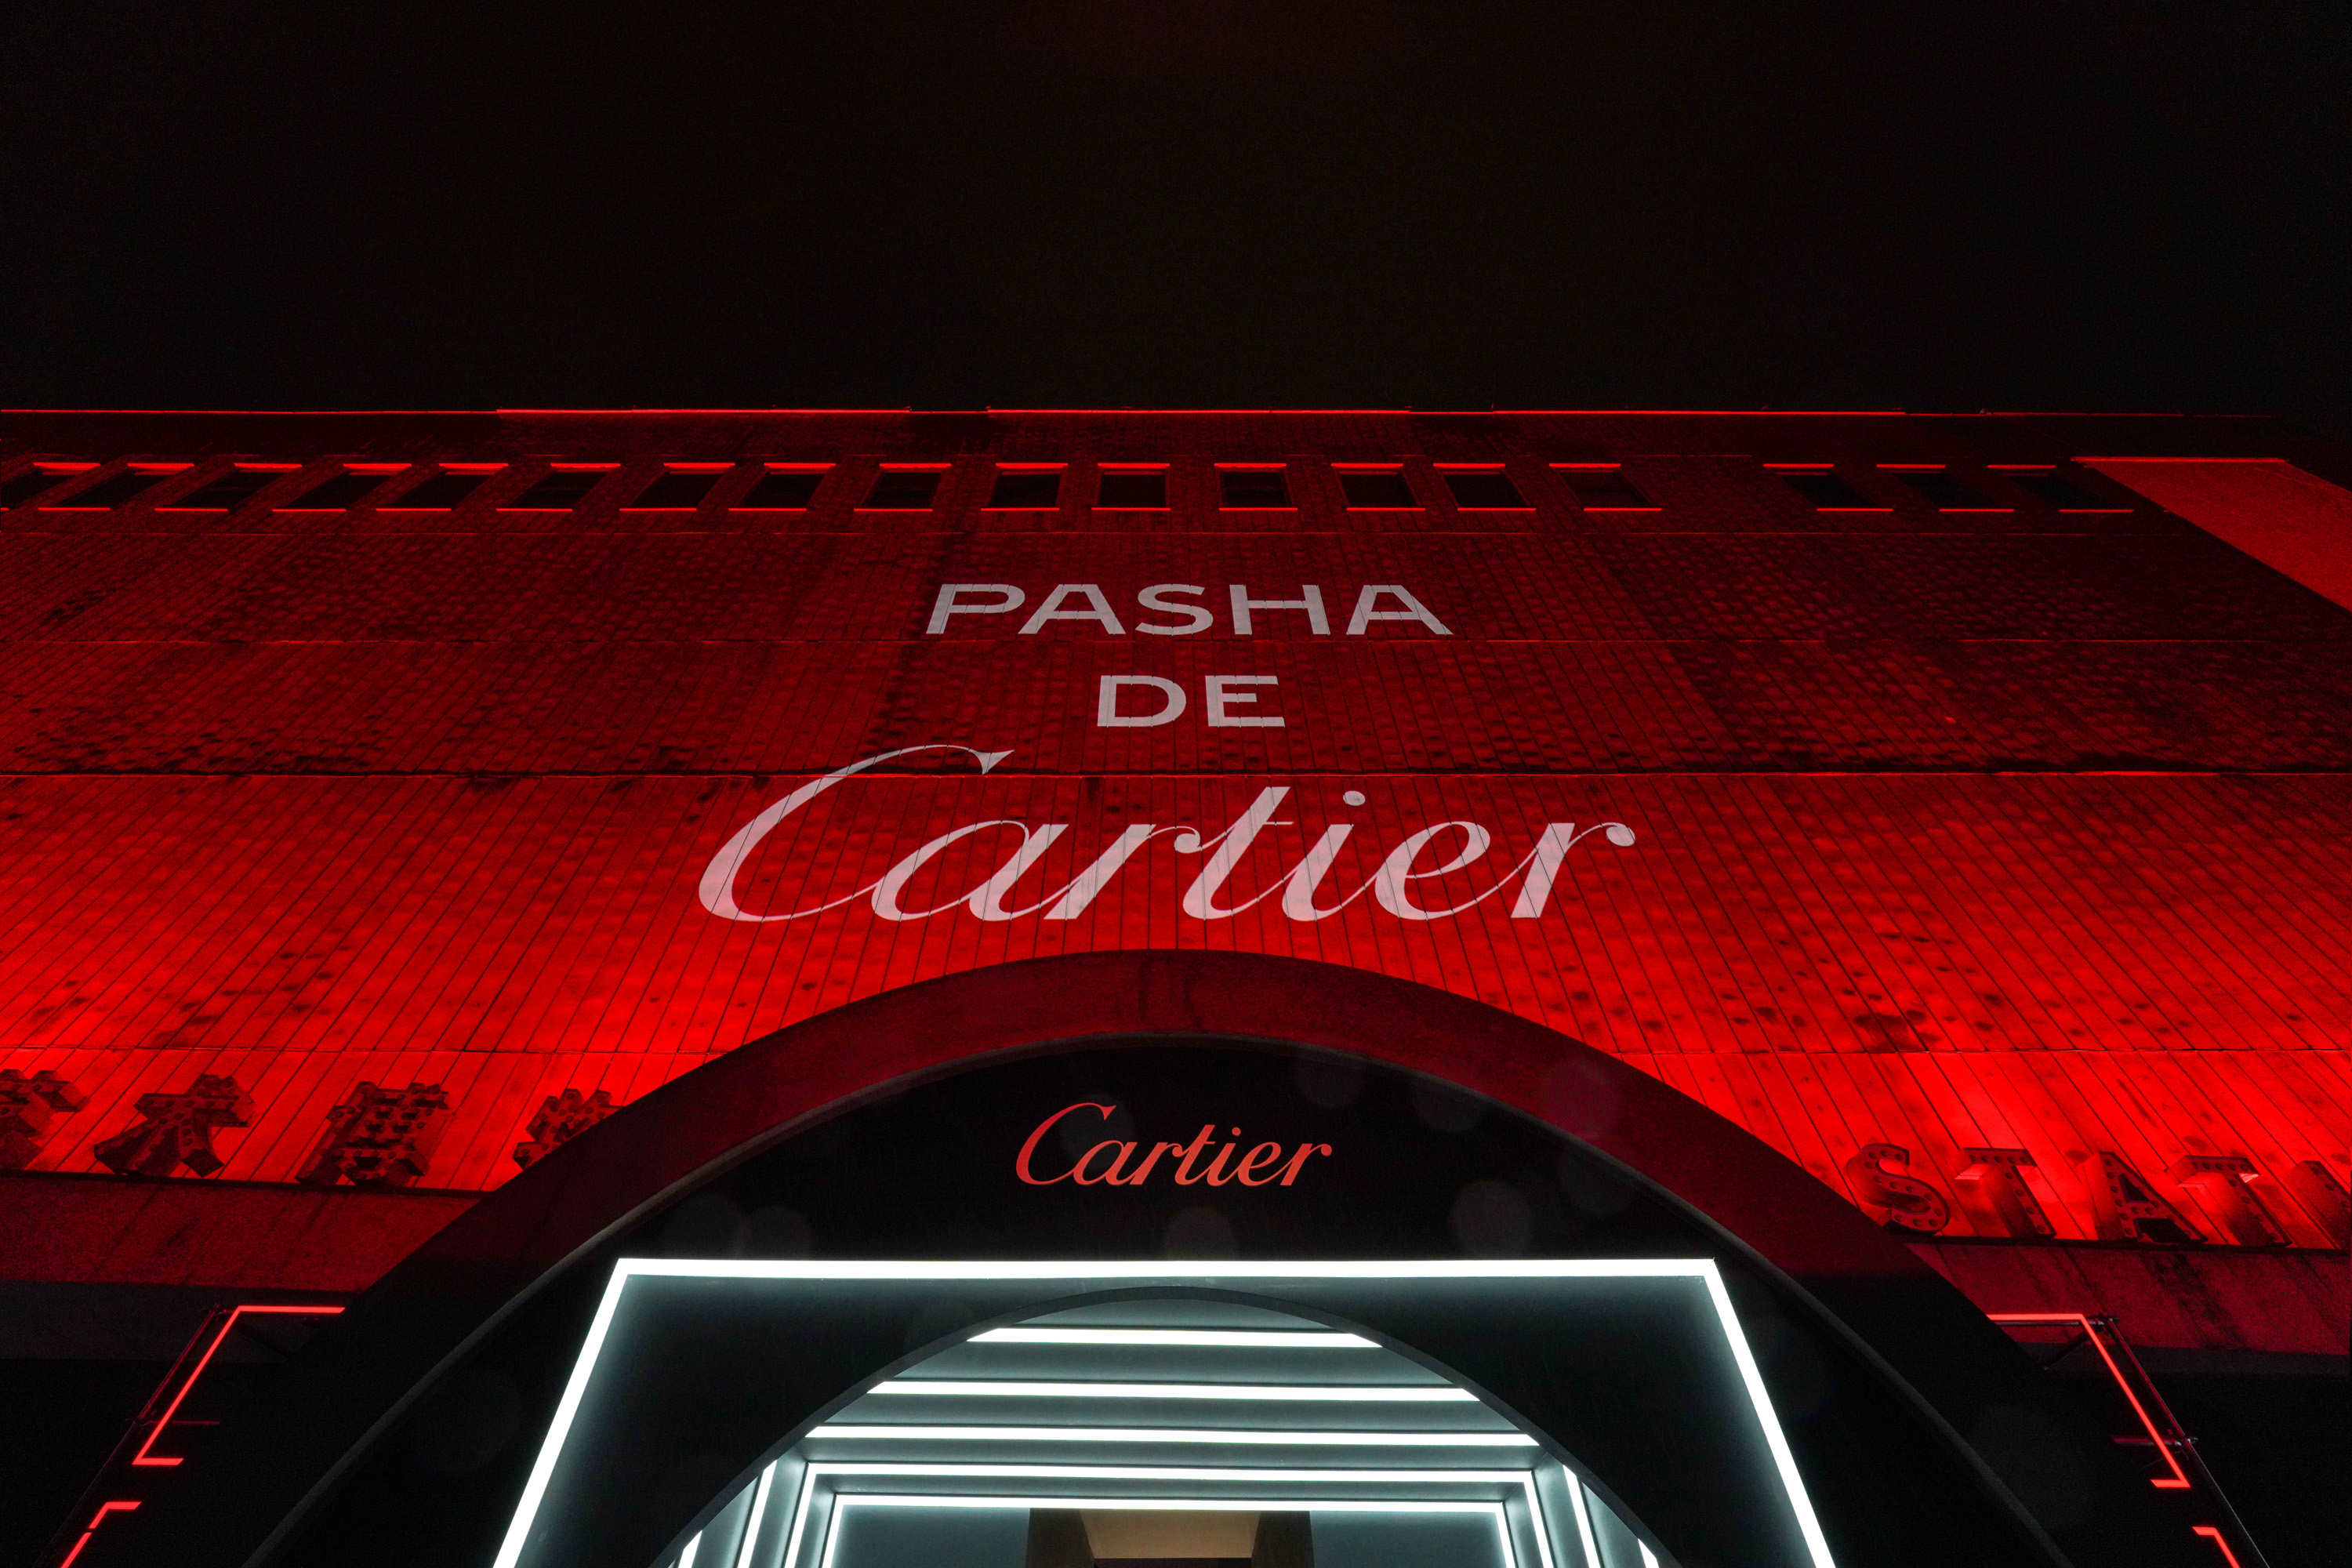 方圆无界 pasha de cartier卡地亚展览及派对之夜